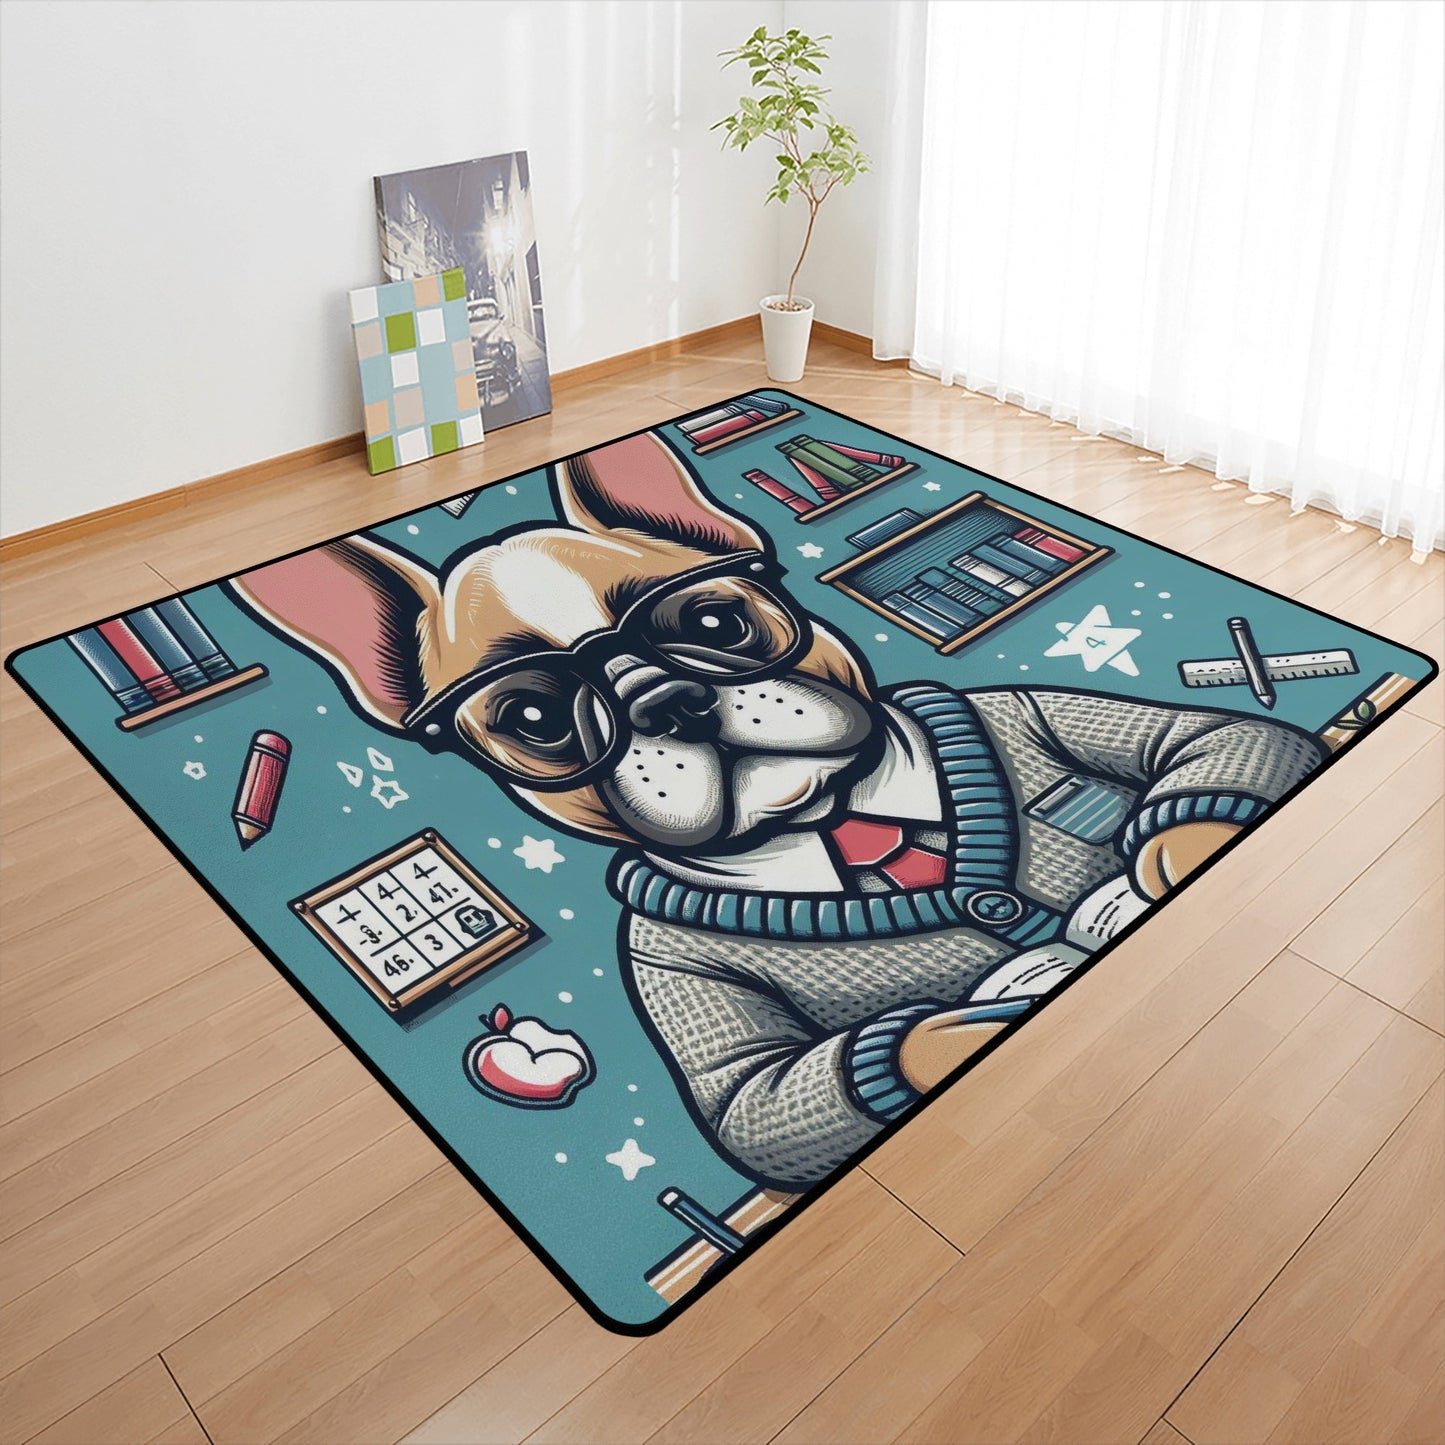 Aspen - Living Room Carpet Rug